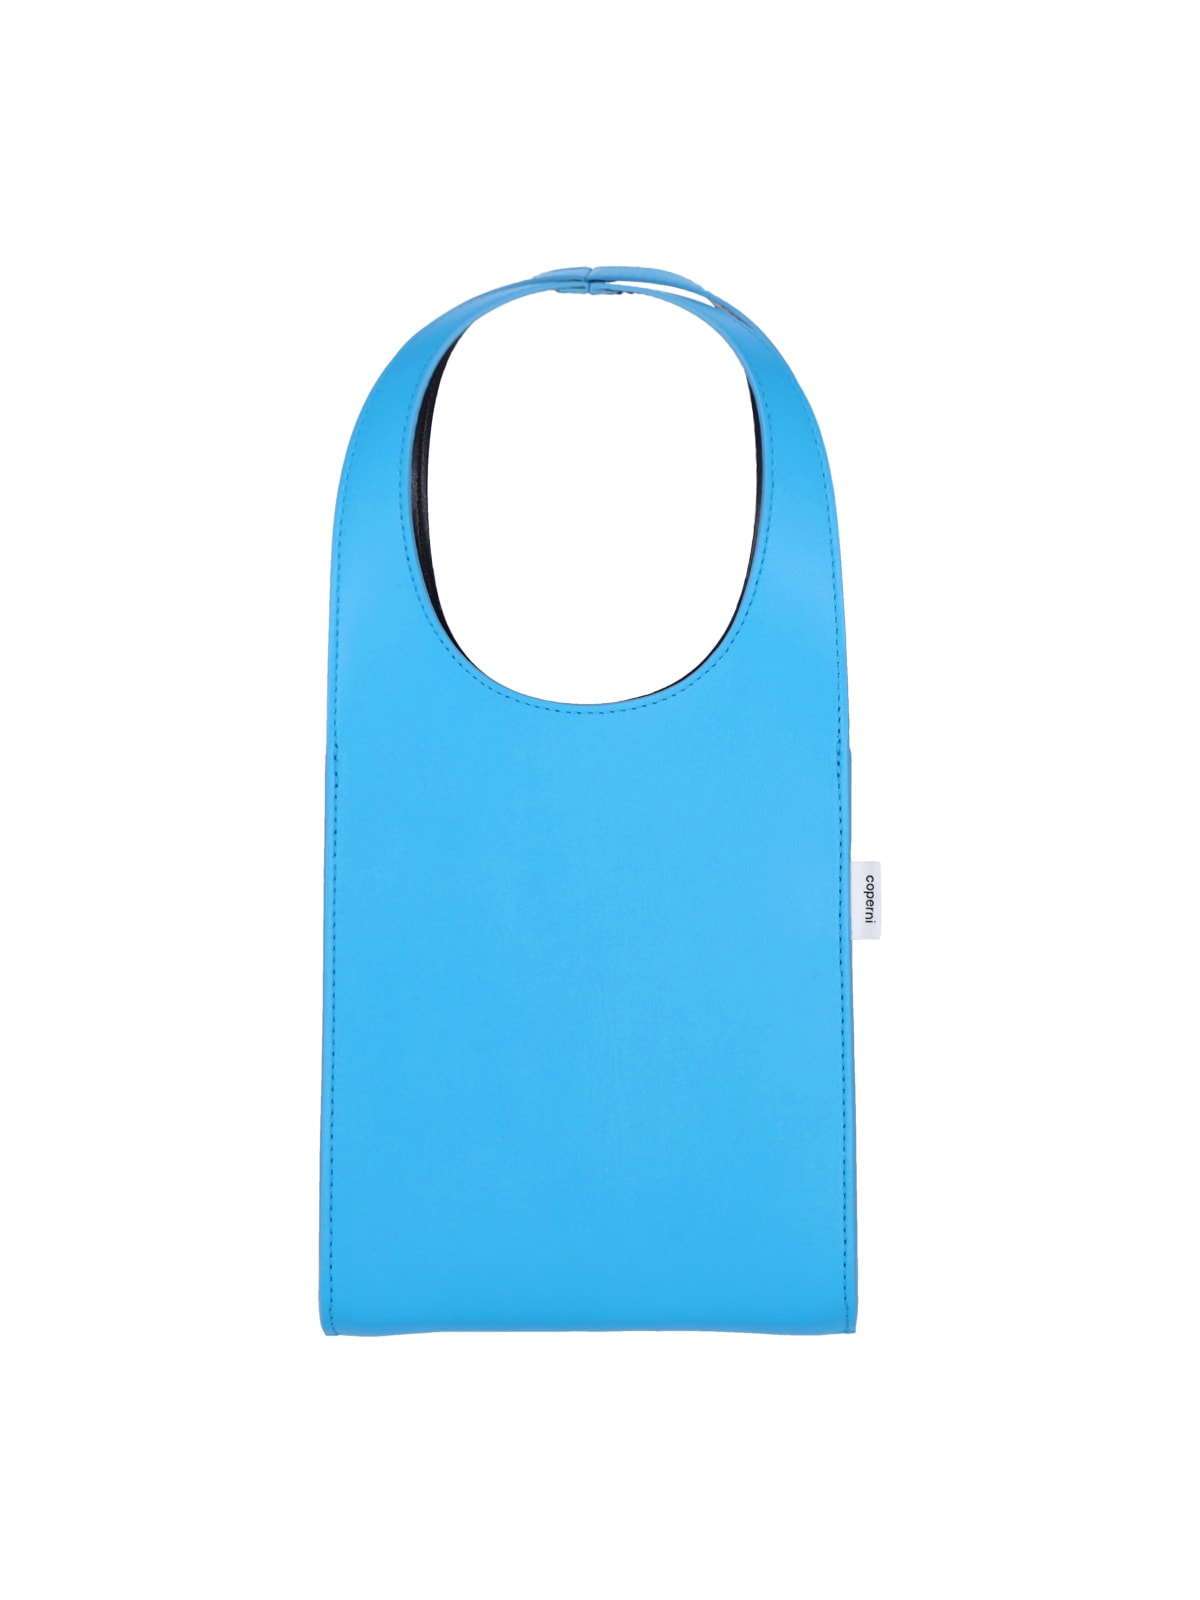 Shop Coperni Micro Swipe Bag In Light Blue